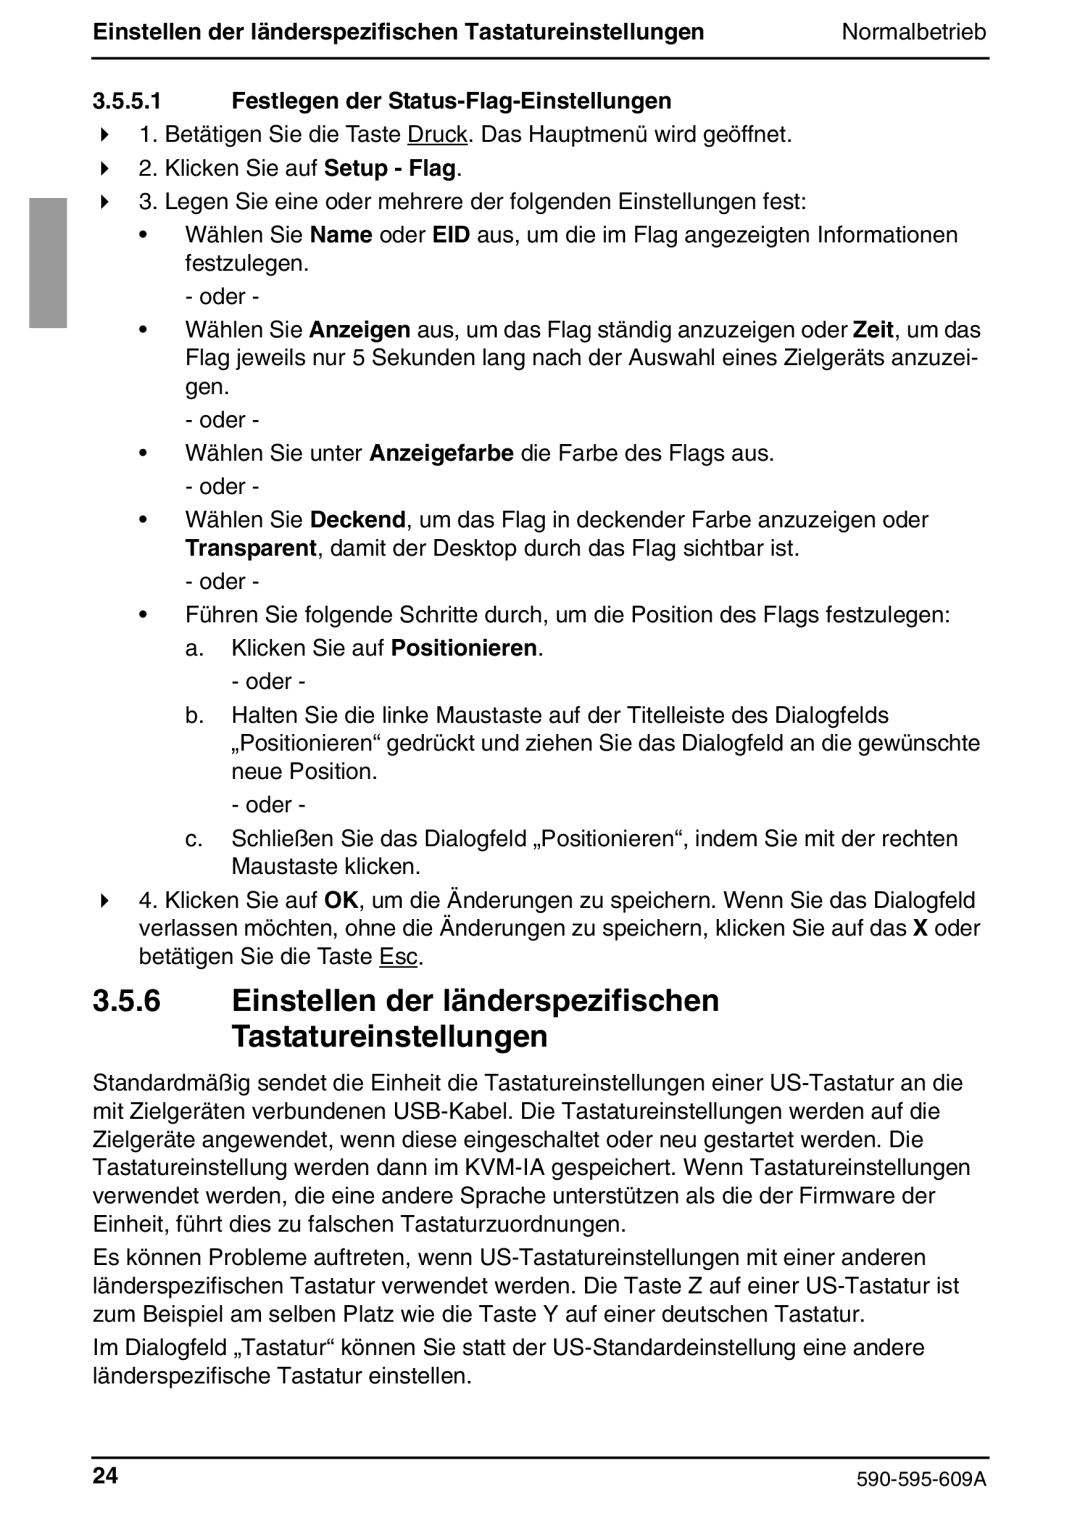 Siemens KVM s2-0411 manual Einstellen der länderspezifischen Tastatureinstellungen, Festlegen der Status-Flag-Einstellungen 